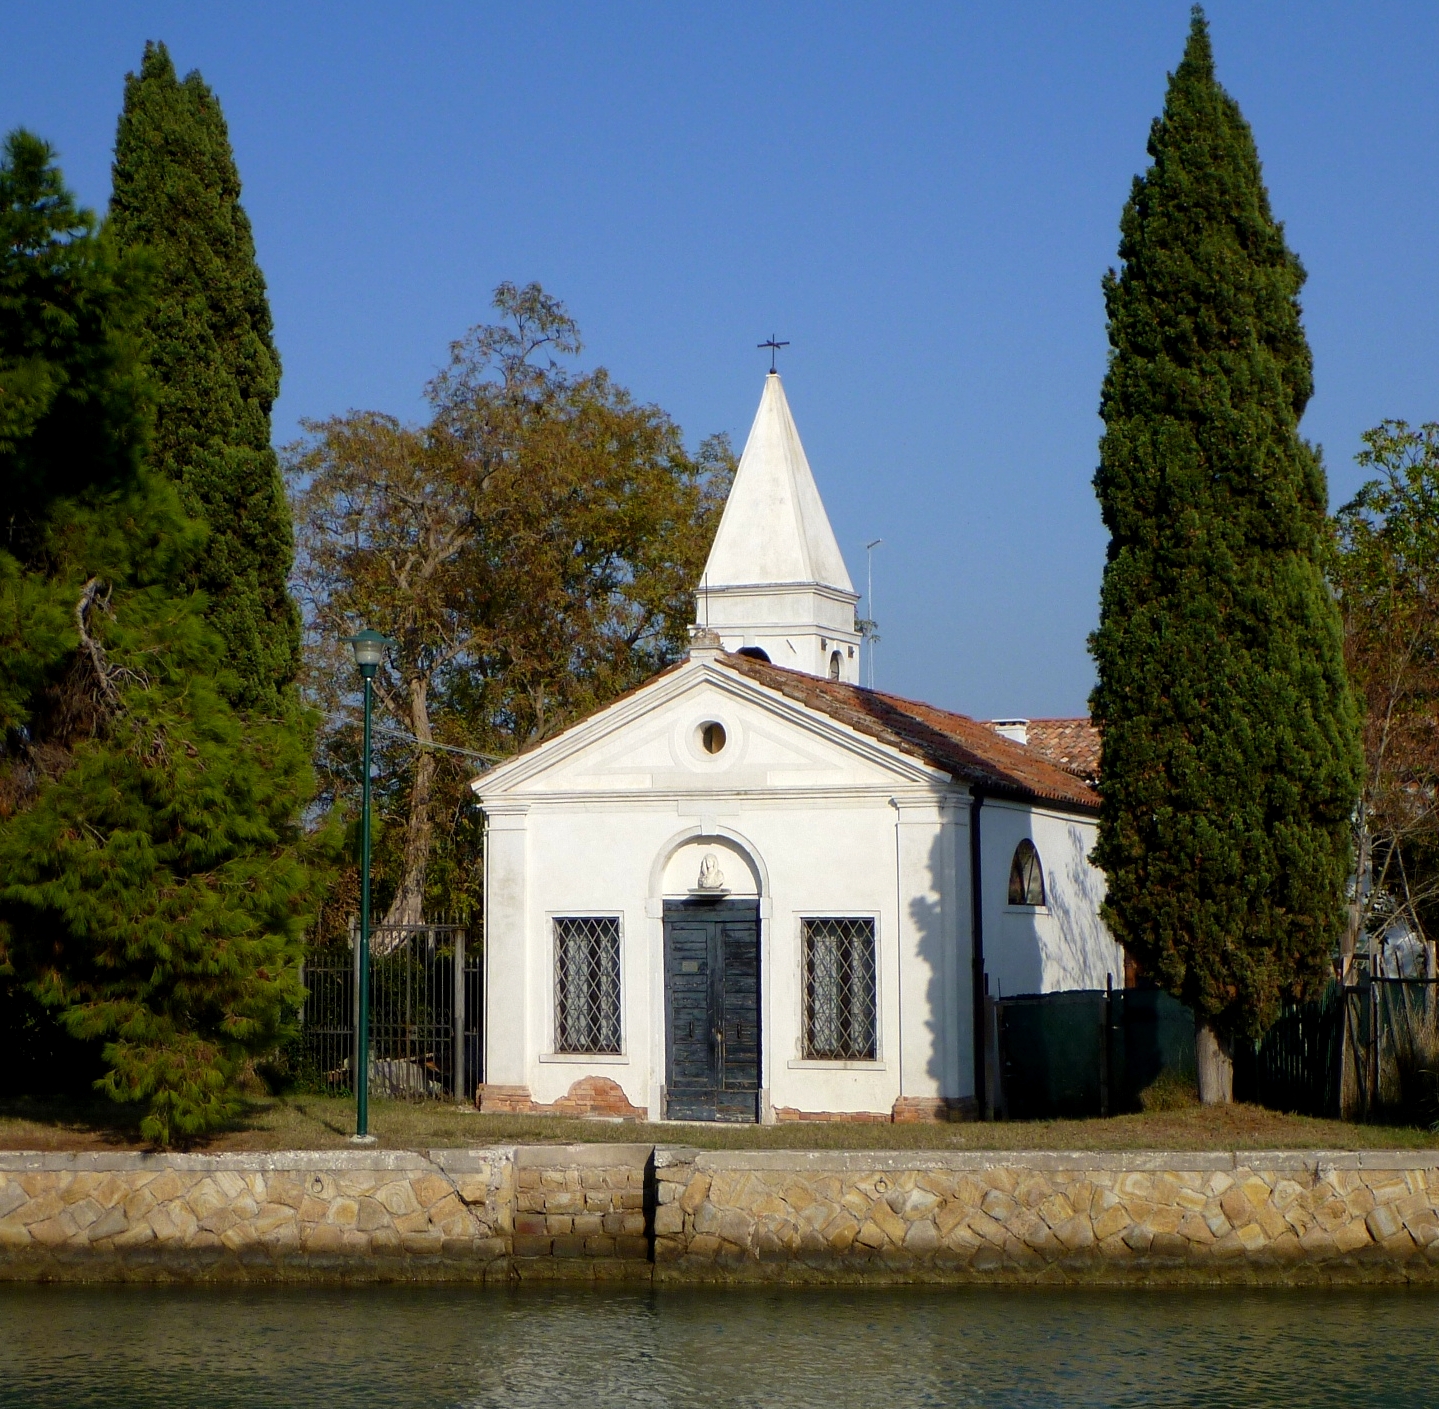 Vignole church